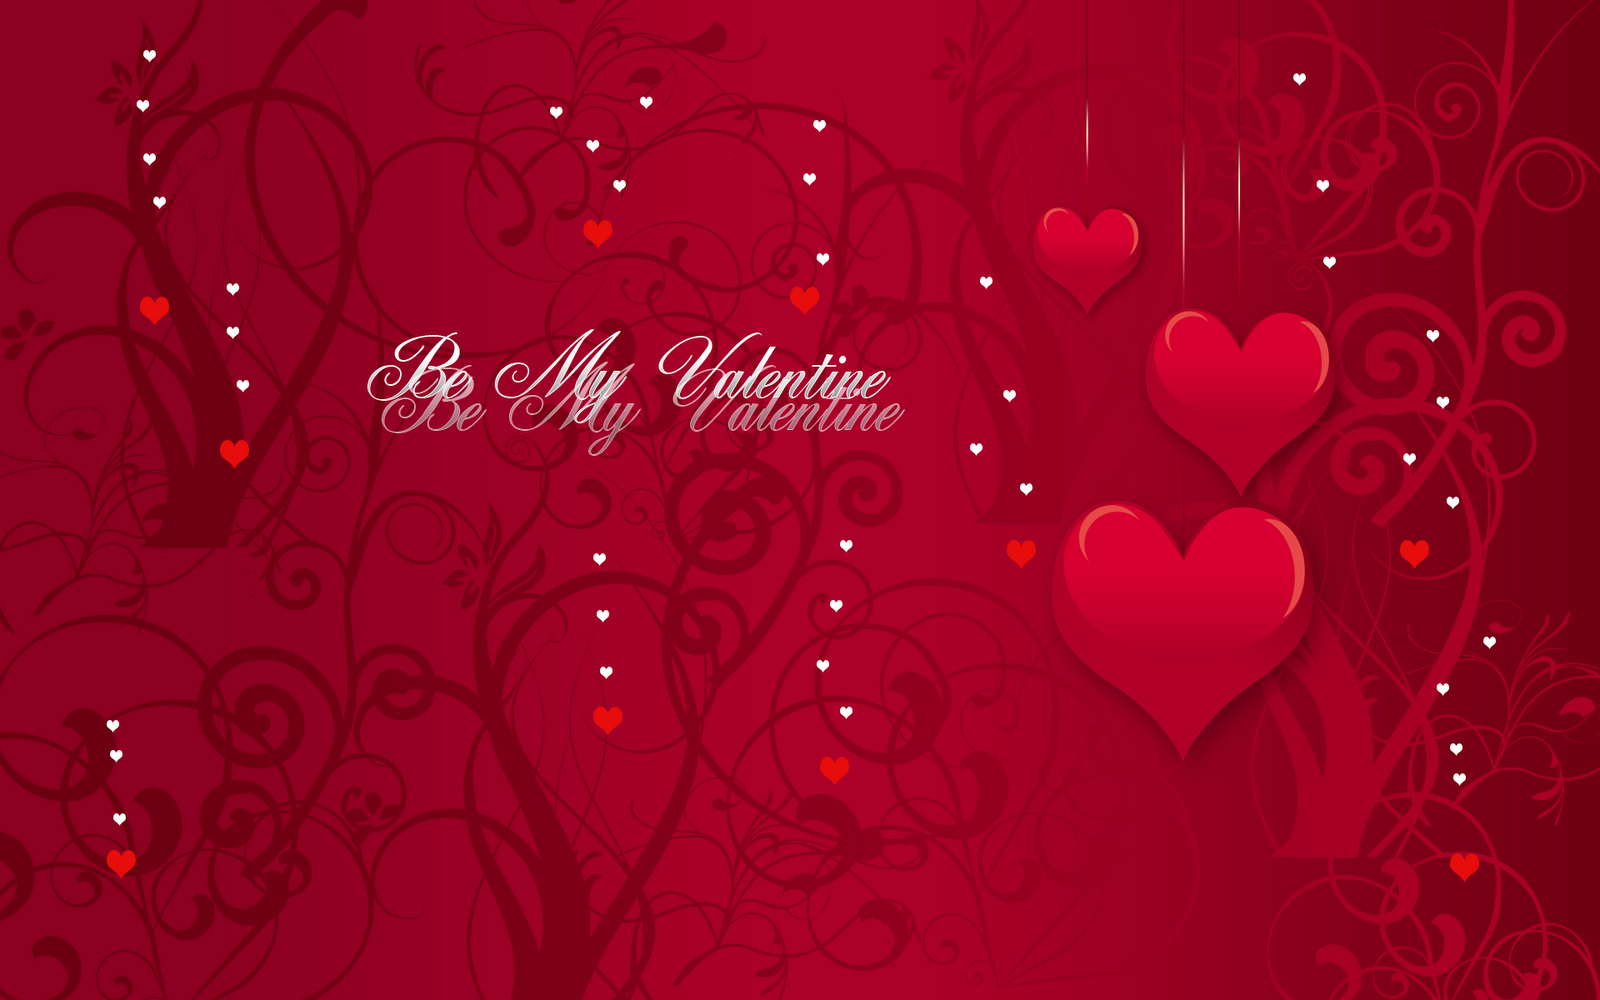 http://3.bp.blogspot.com/_2UbsSBz9ckE/S2Sp6qJSzdI/AAAAAAAAAvI/KlaYET0BtYE/s1600/Be_My_Valentine_hd%2Bwallpaper.png